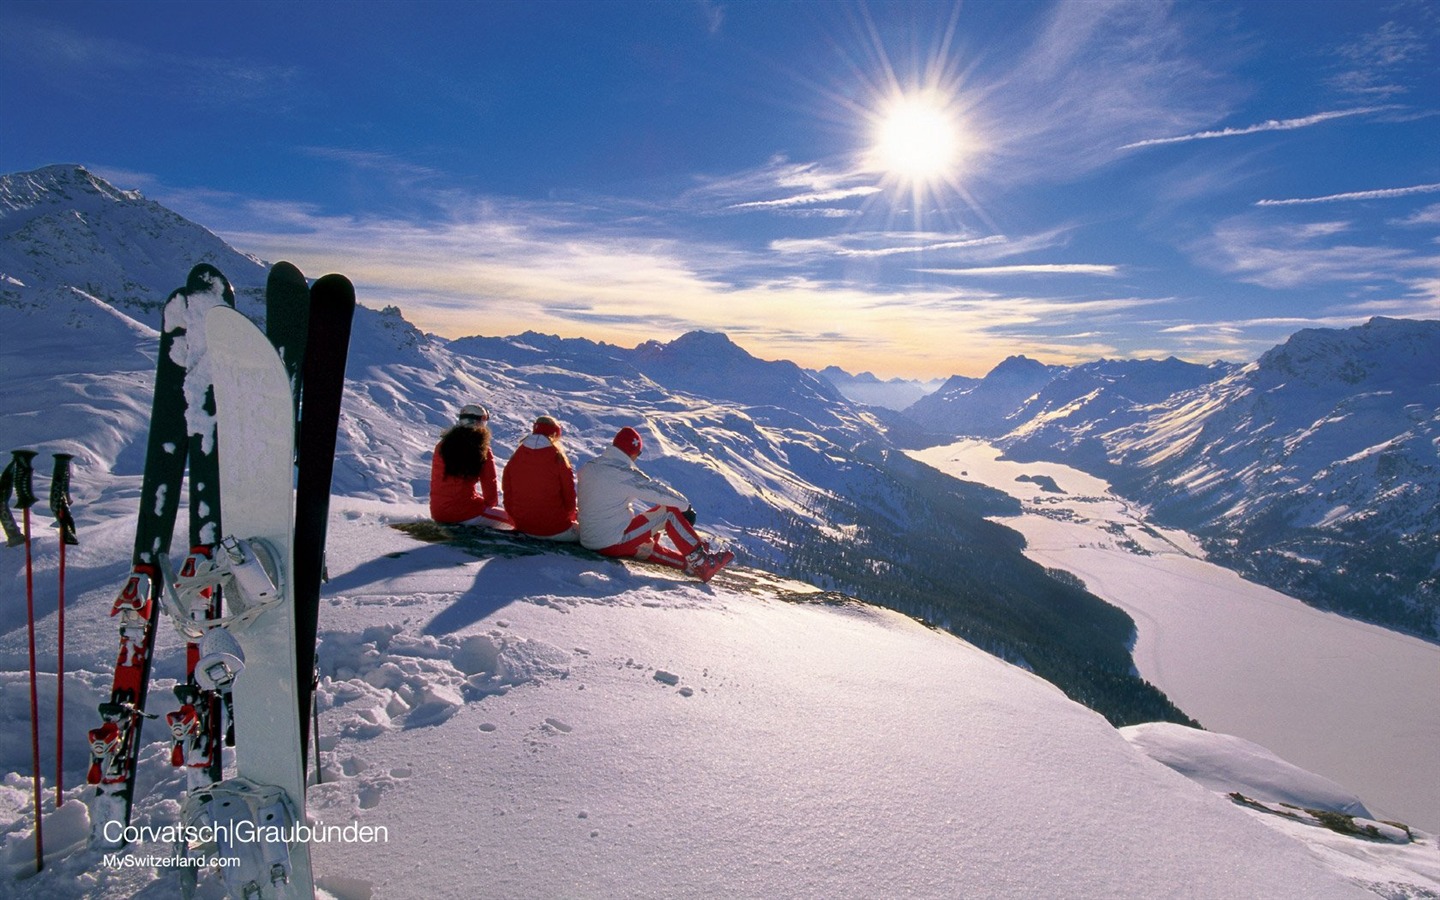 瑞士冬季旅游景点壁纸6 - 1440x900